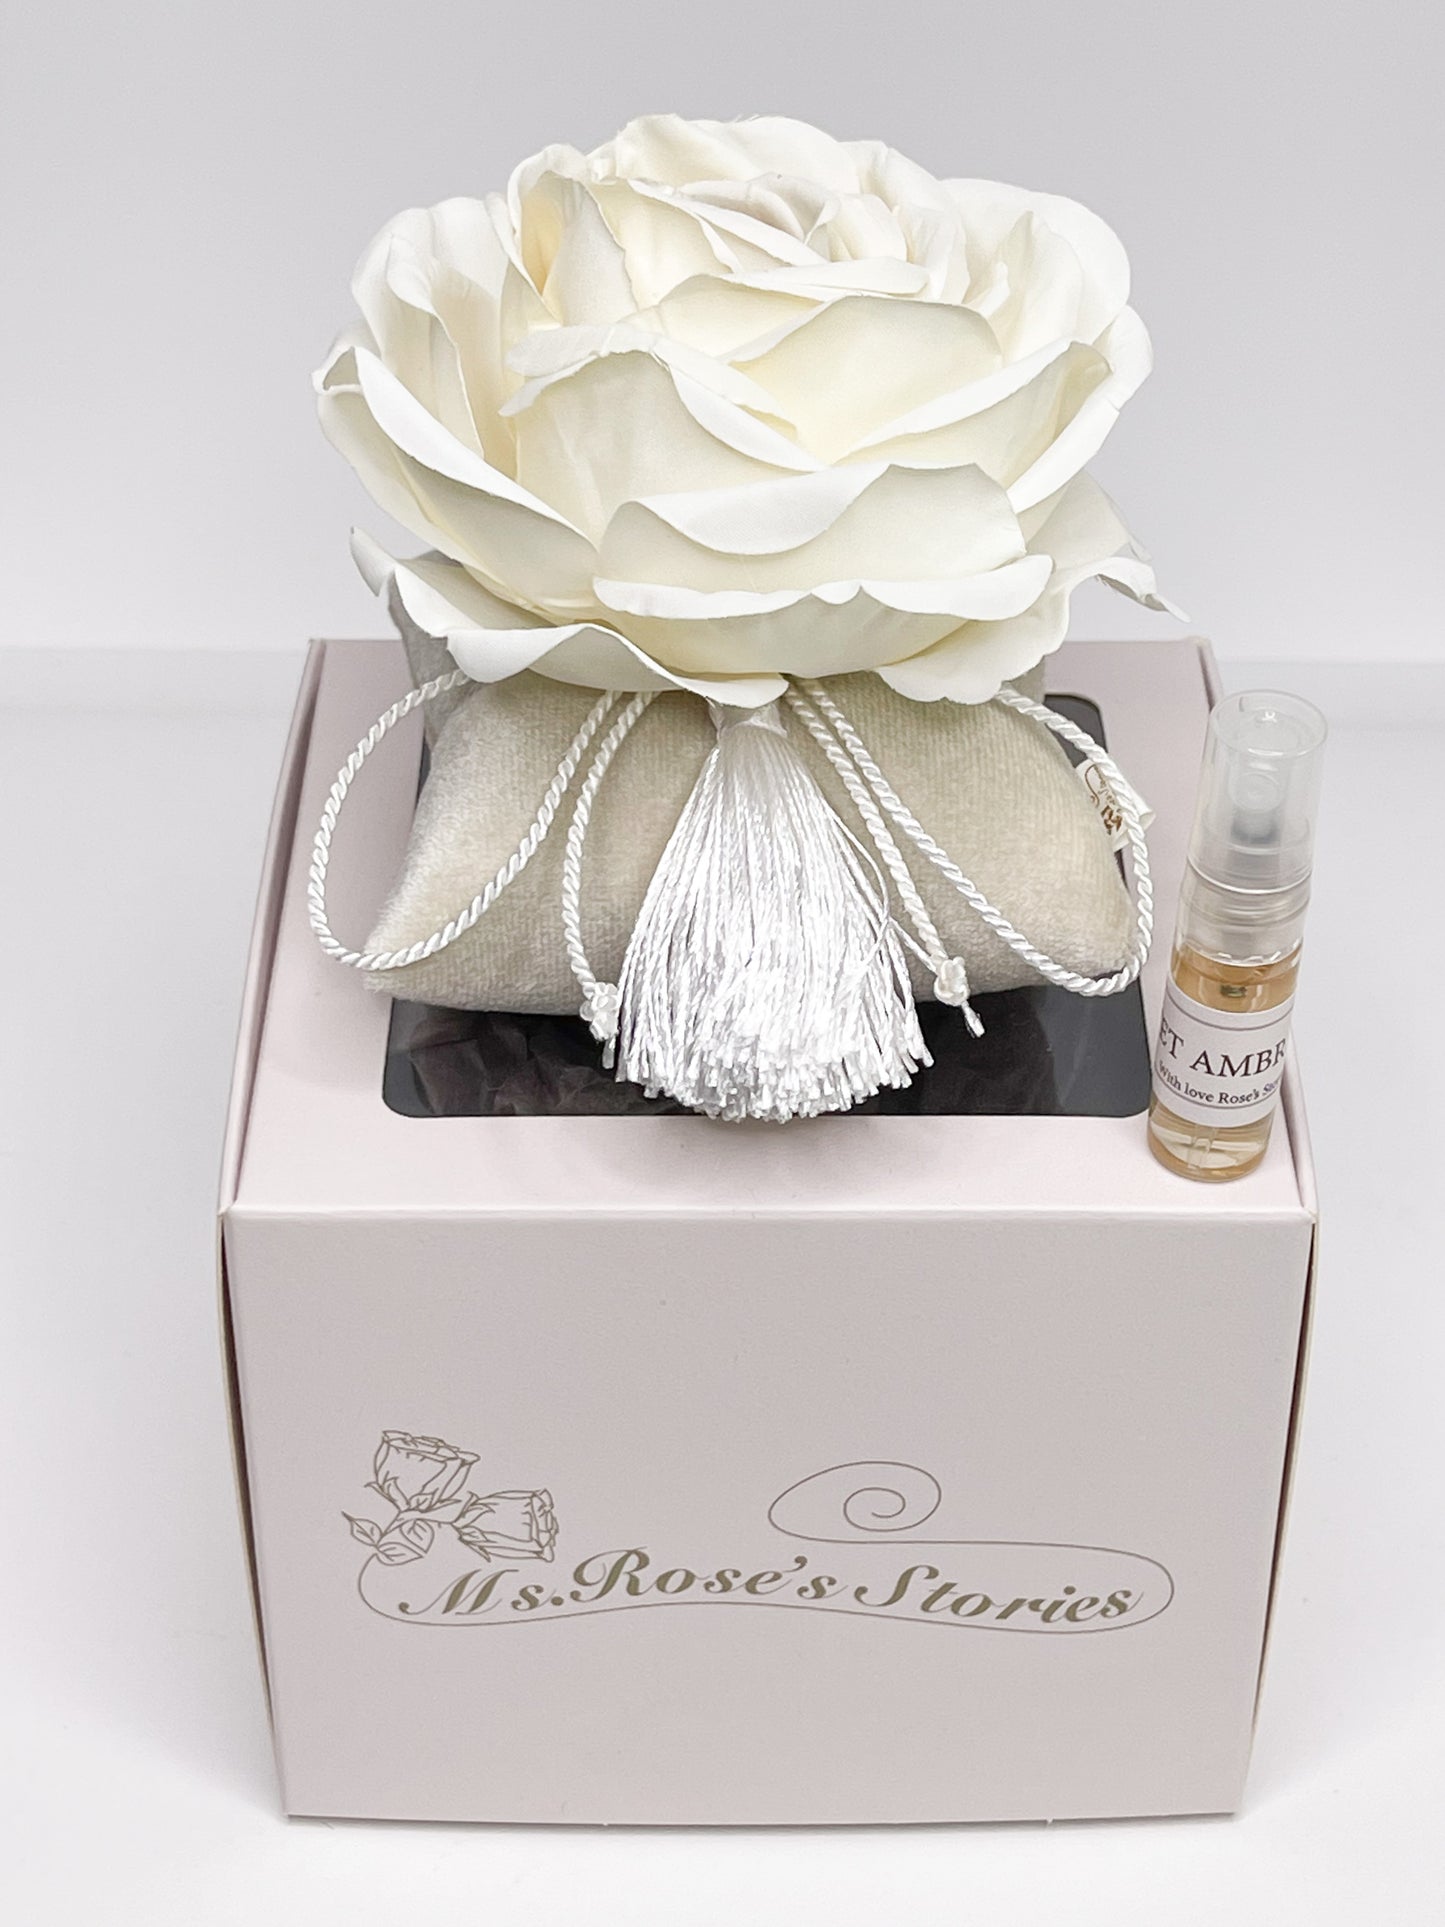 Home fragrance "White Rose"